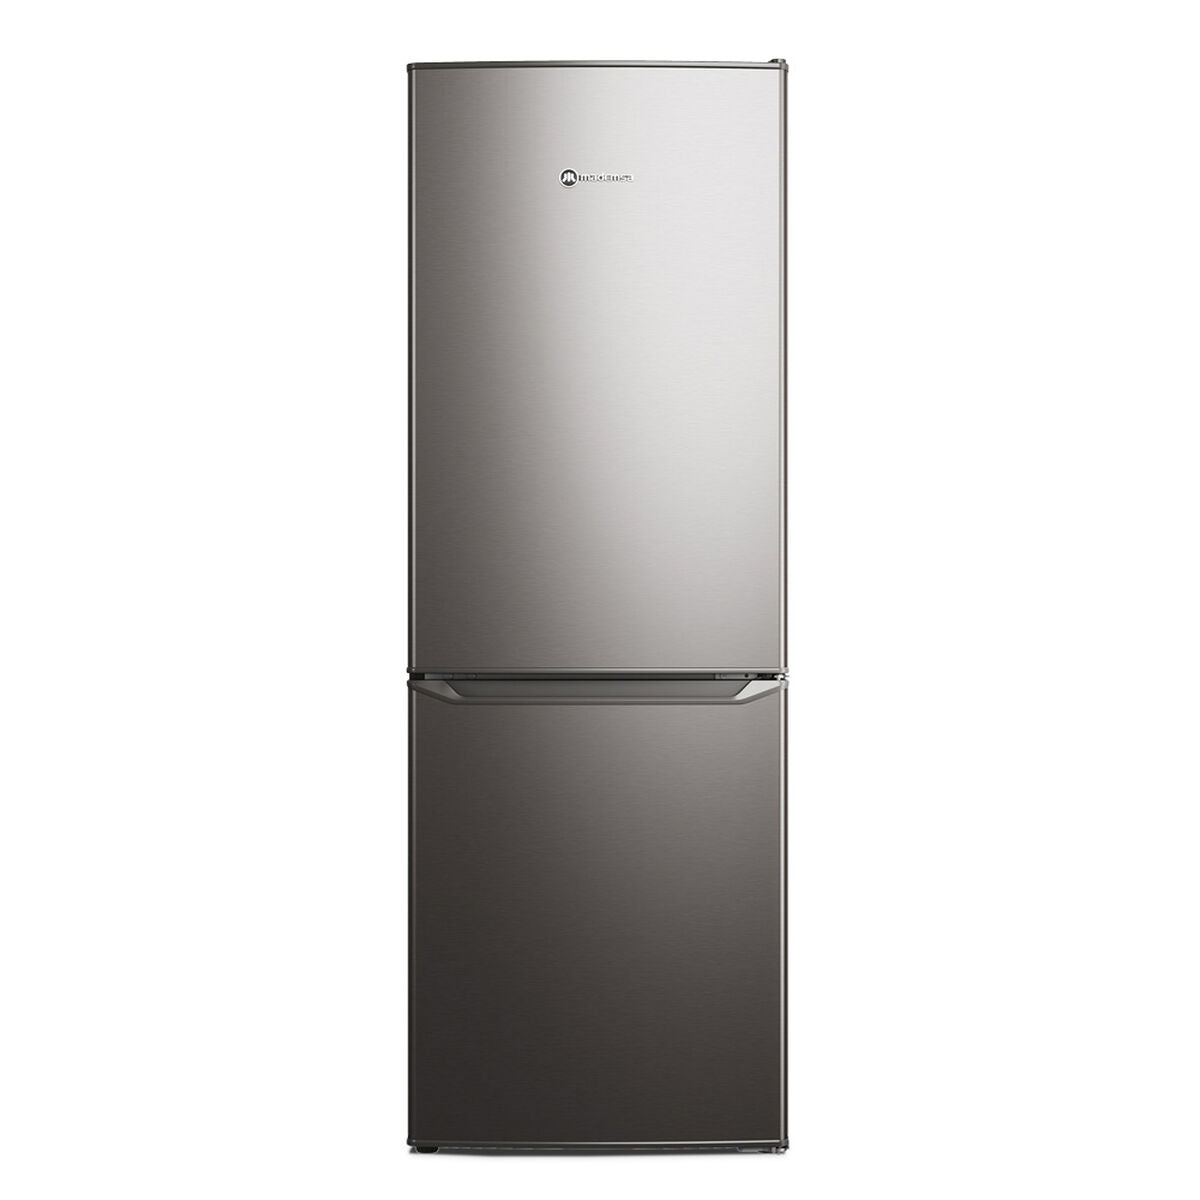 Refrigerador Frost 166 litros MED165 Mademsa Silver [Open box] [New]